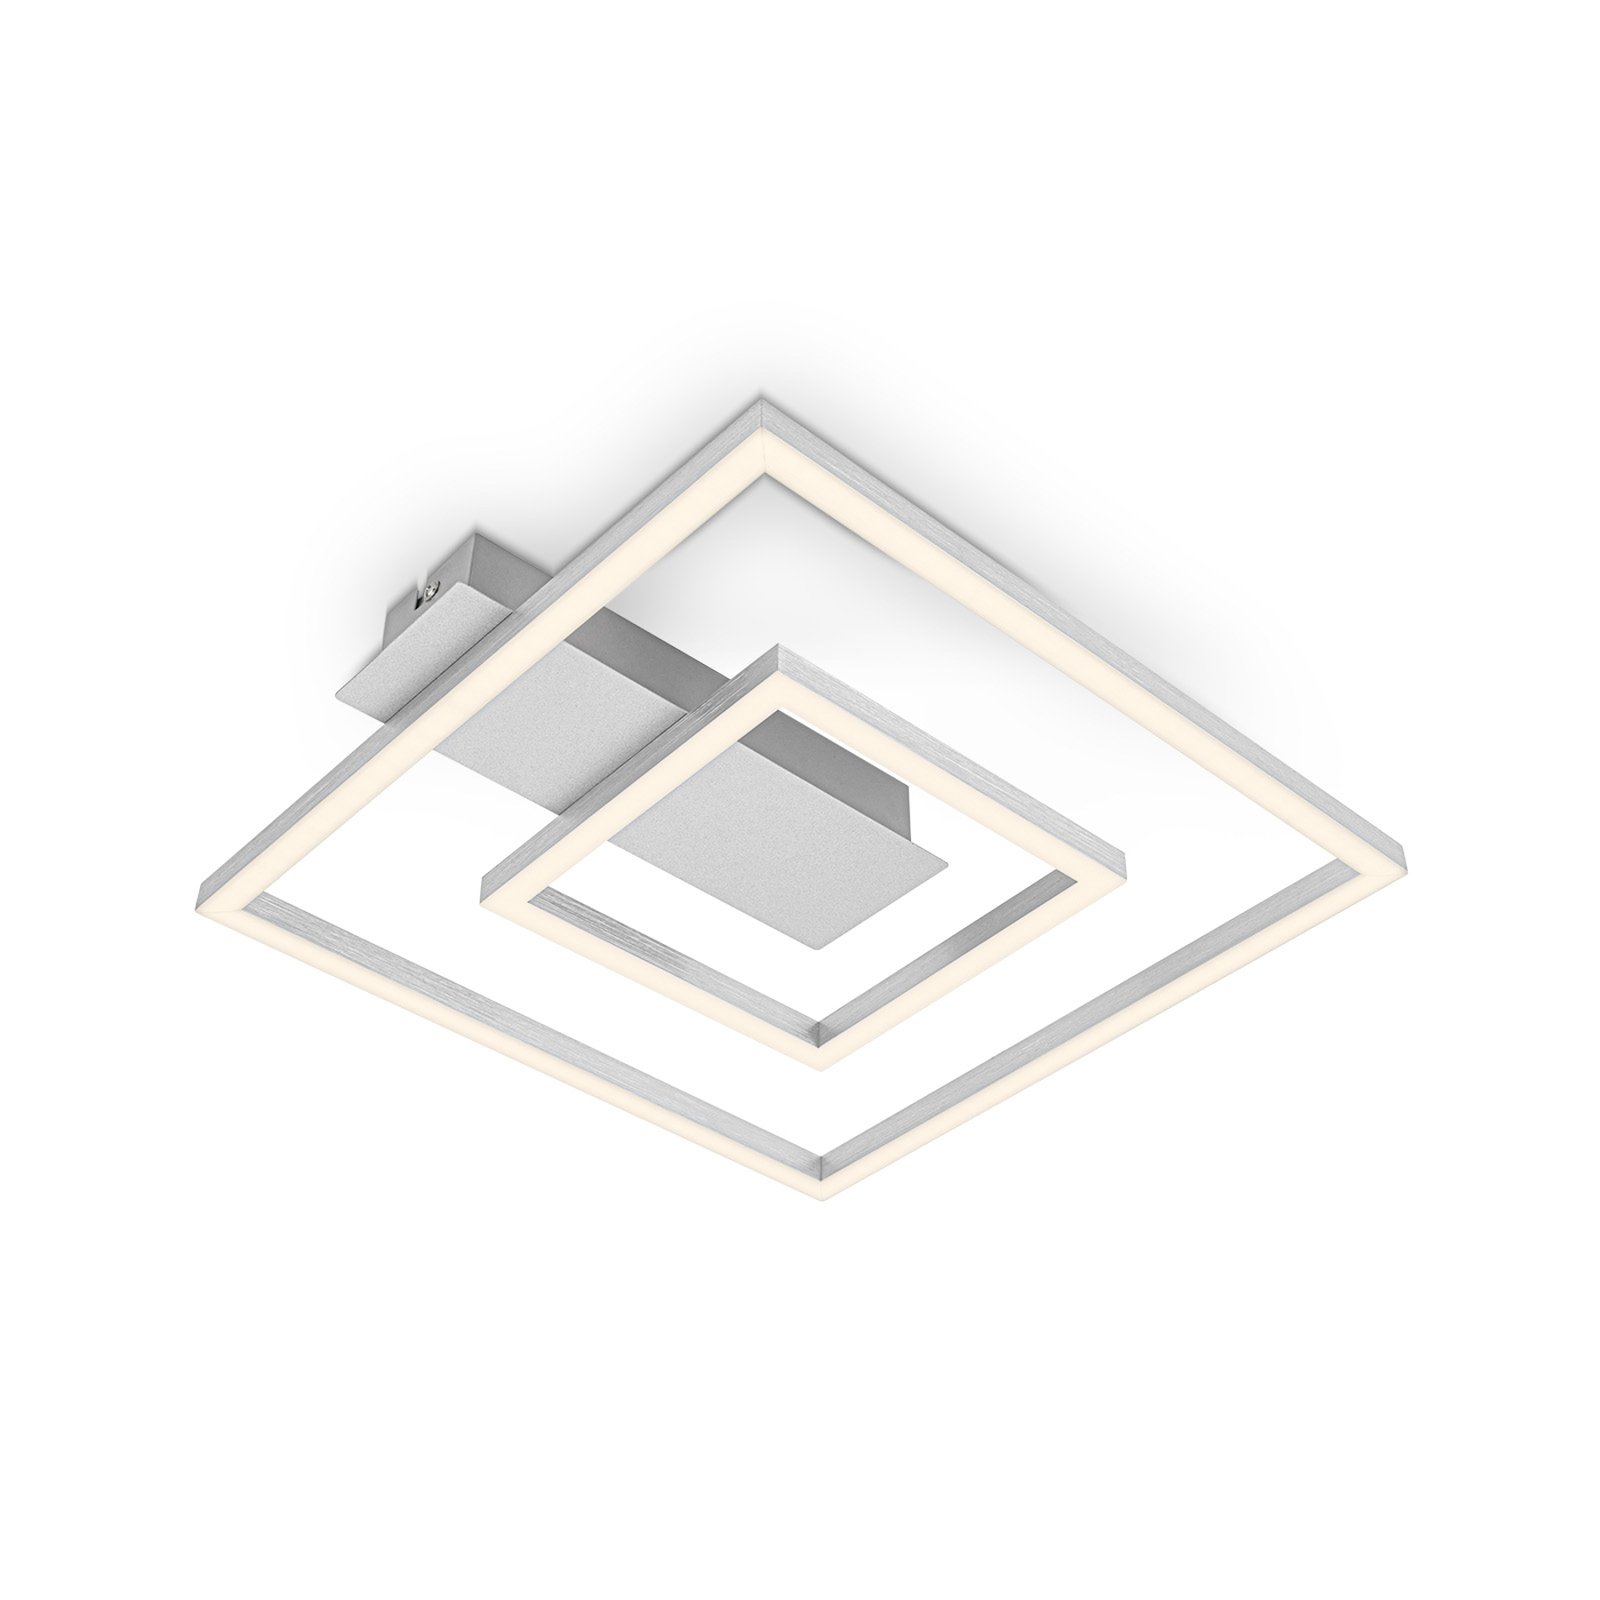 LED-Deckenleuchte 3772 mit 2 Rahmen, alu